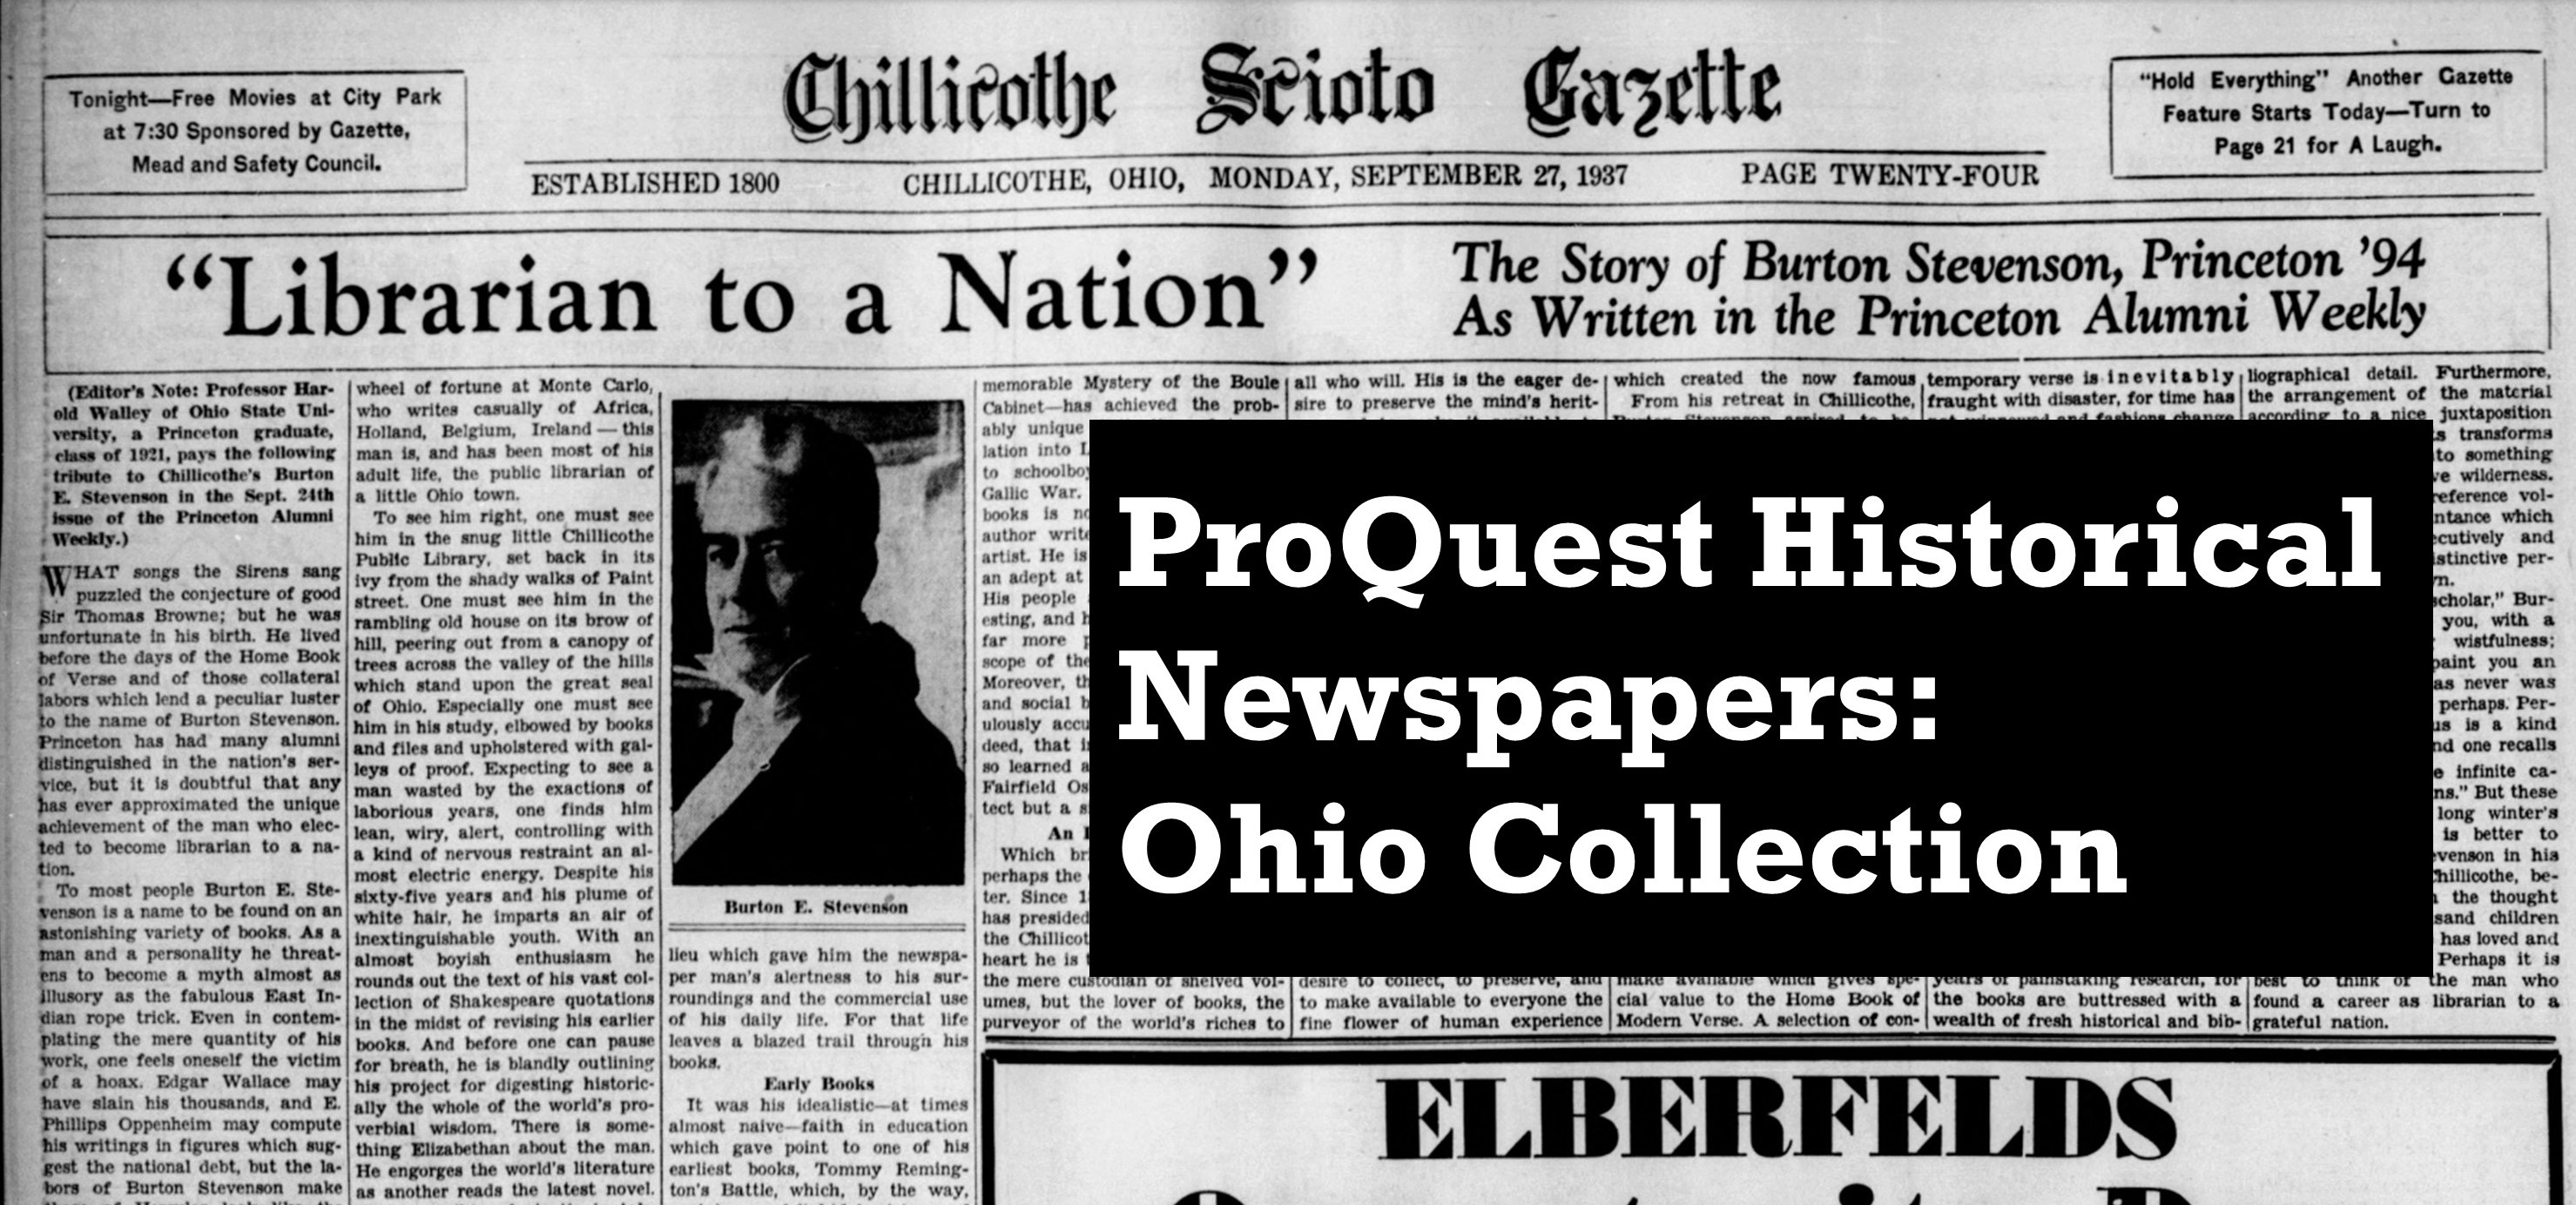 Chillicothe Gazette and Ohio Newspaper Archive